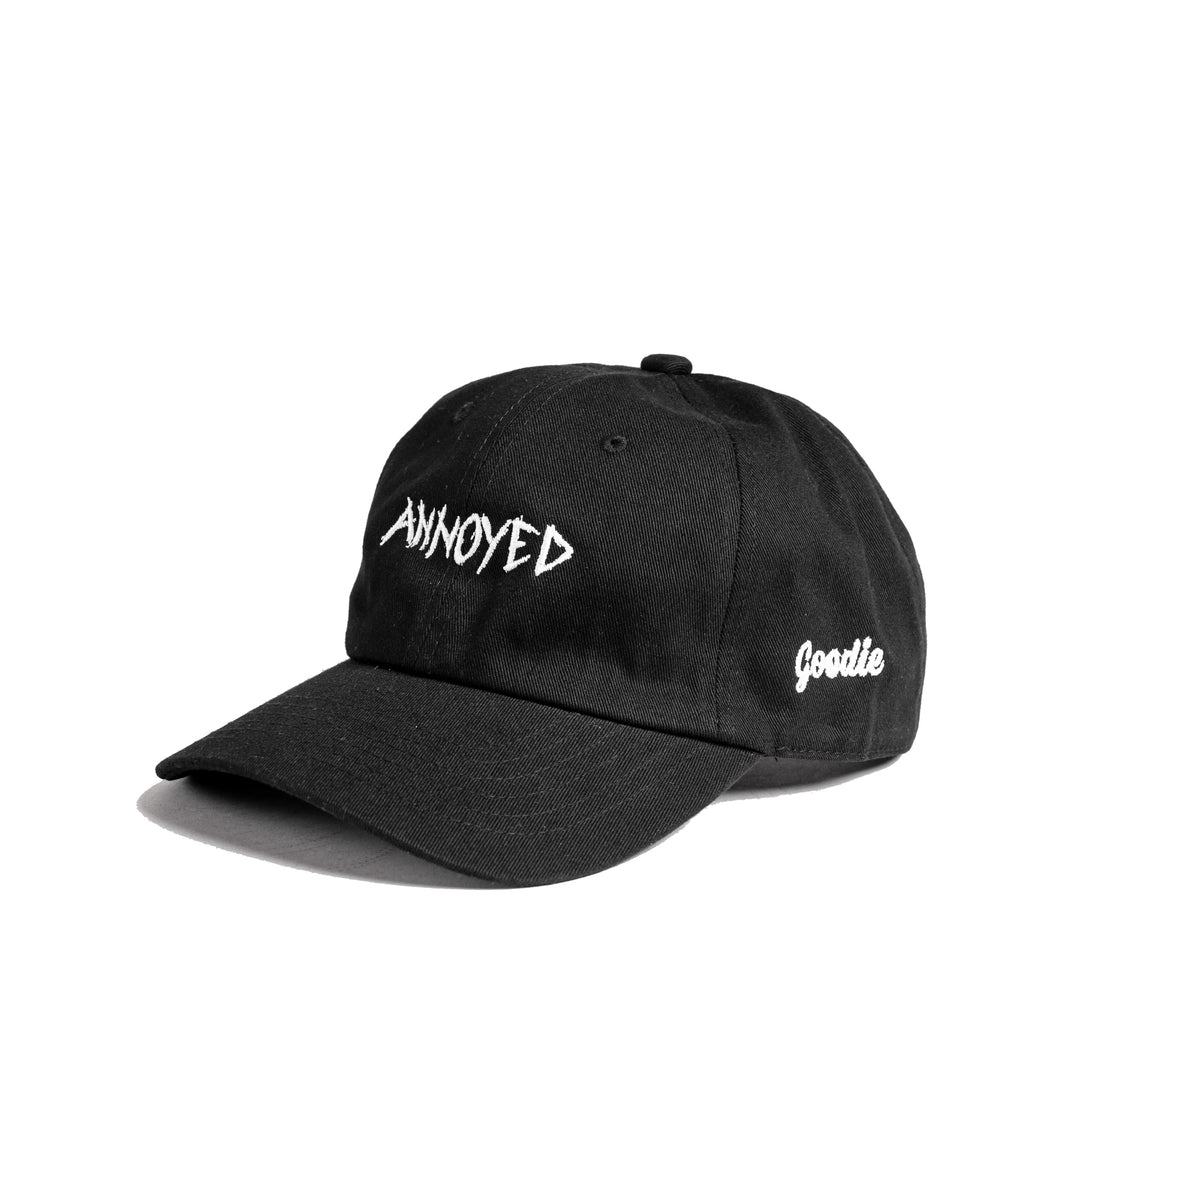 ANNOYED CAP